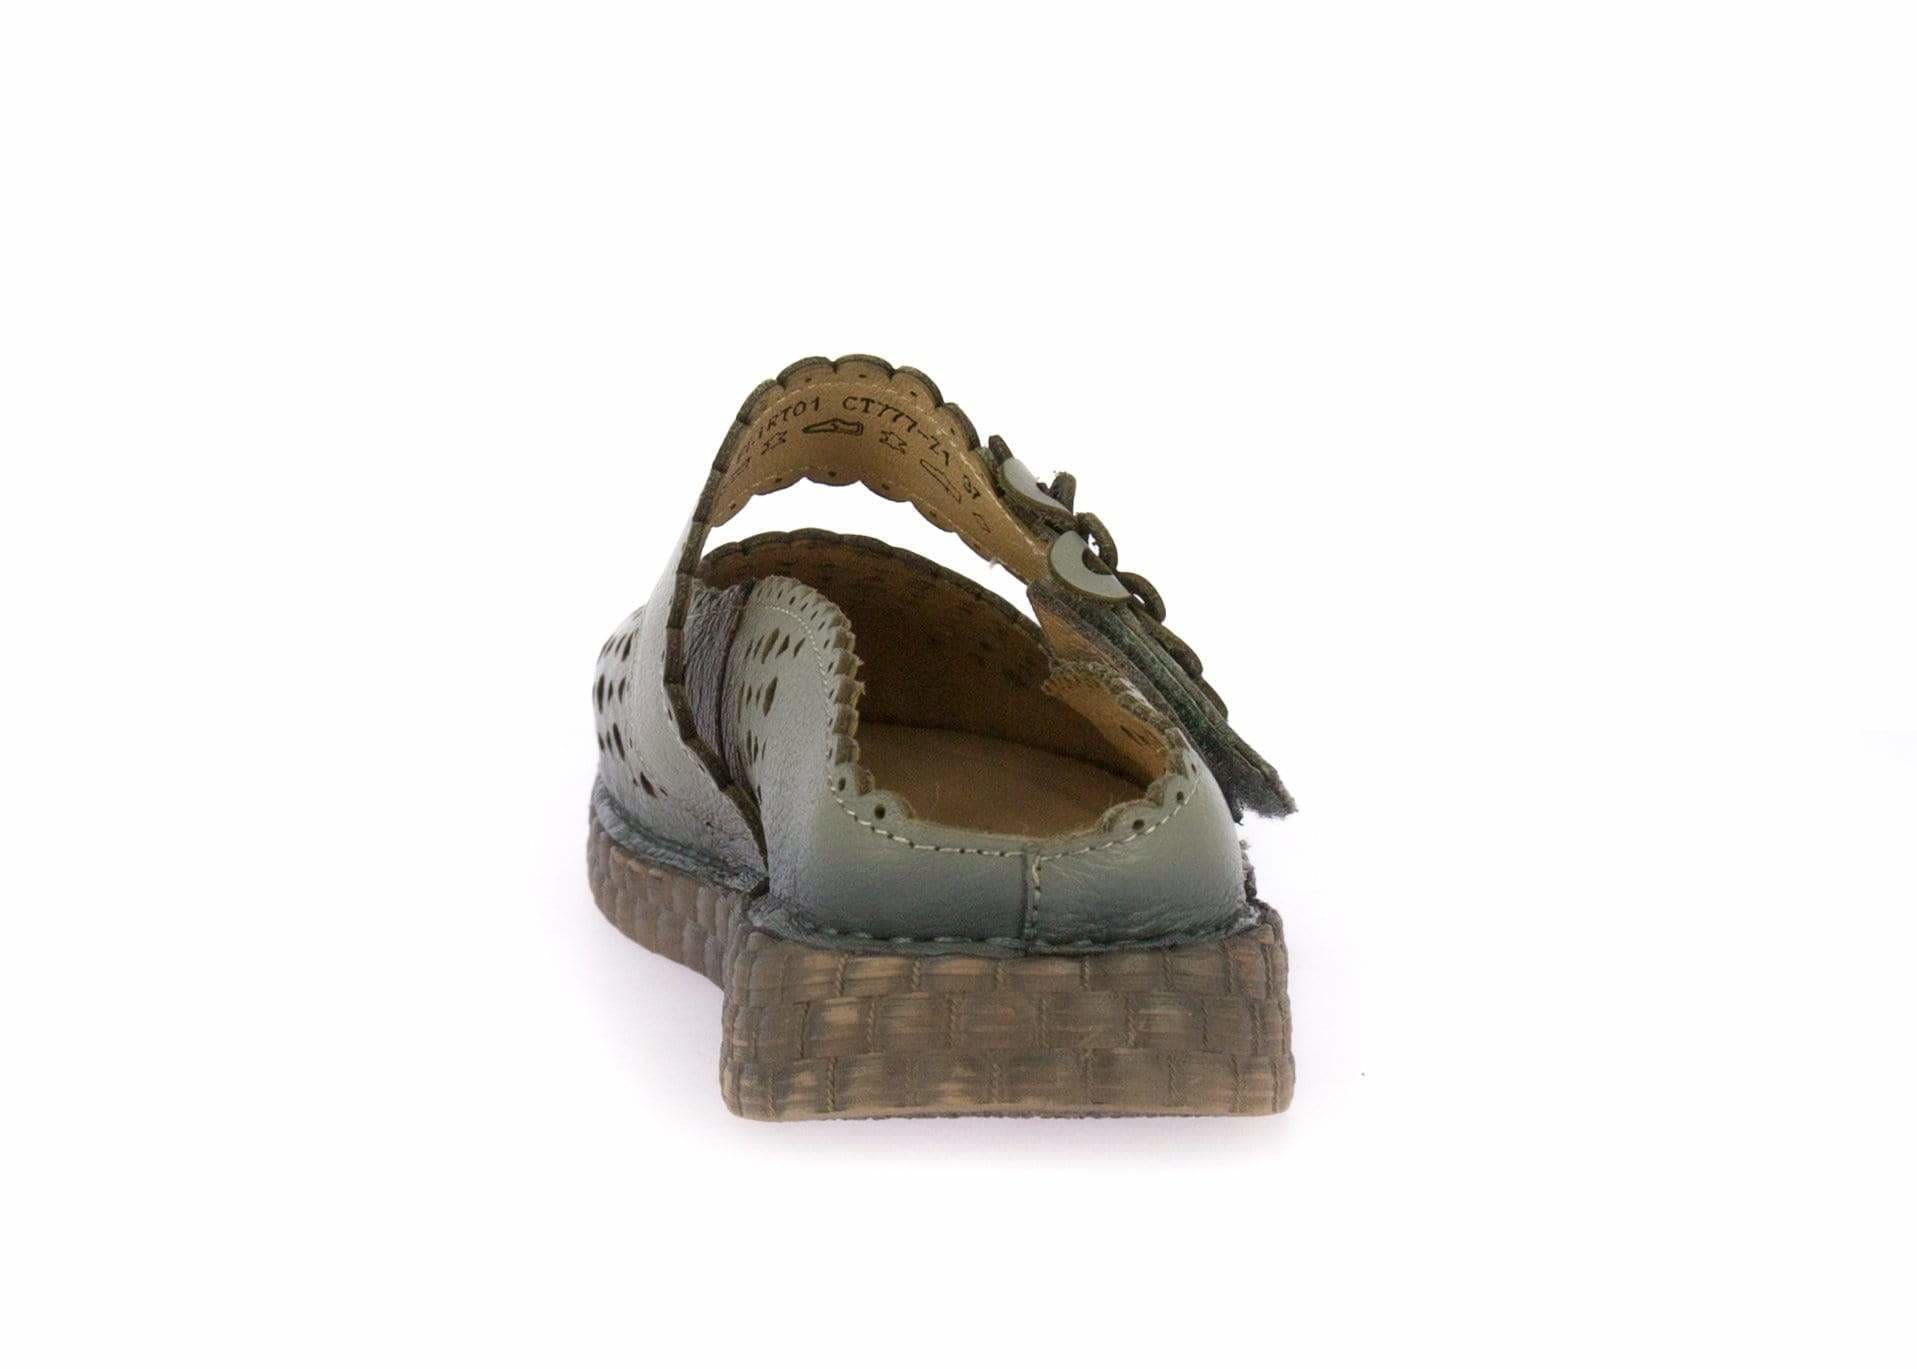 Shoe FLCIRTO01 - Mule